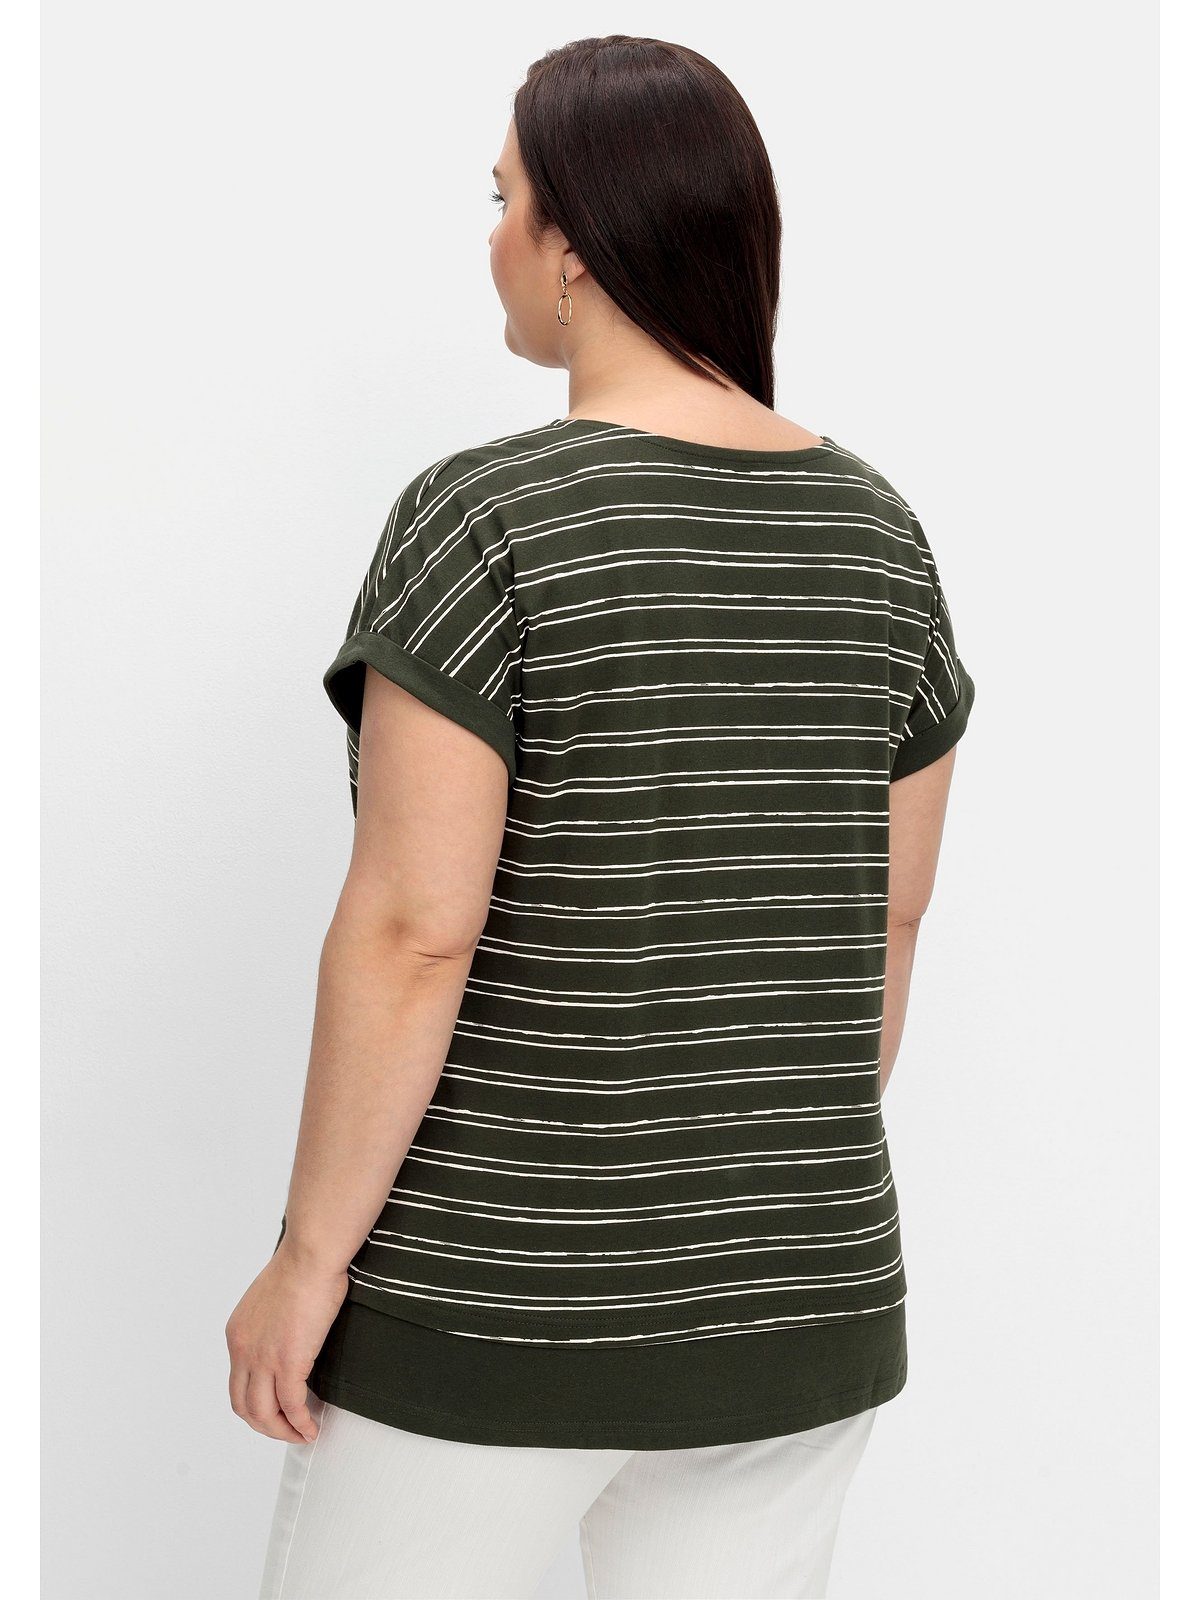 Baumwolle reiner dunkeloliv im T-Shirt Sheego Größen Große aus gestreift Lagenlook,